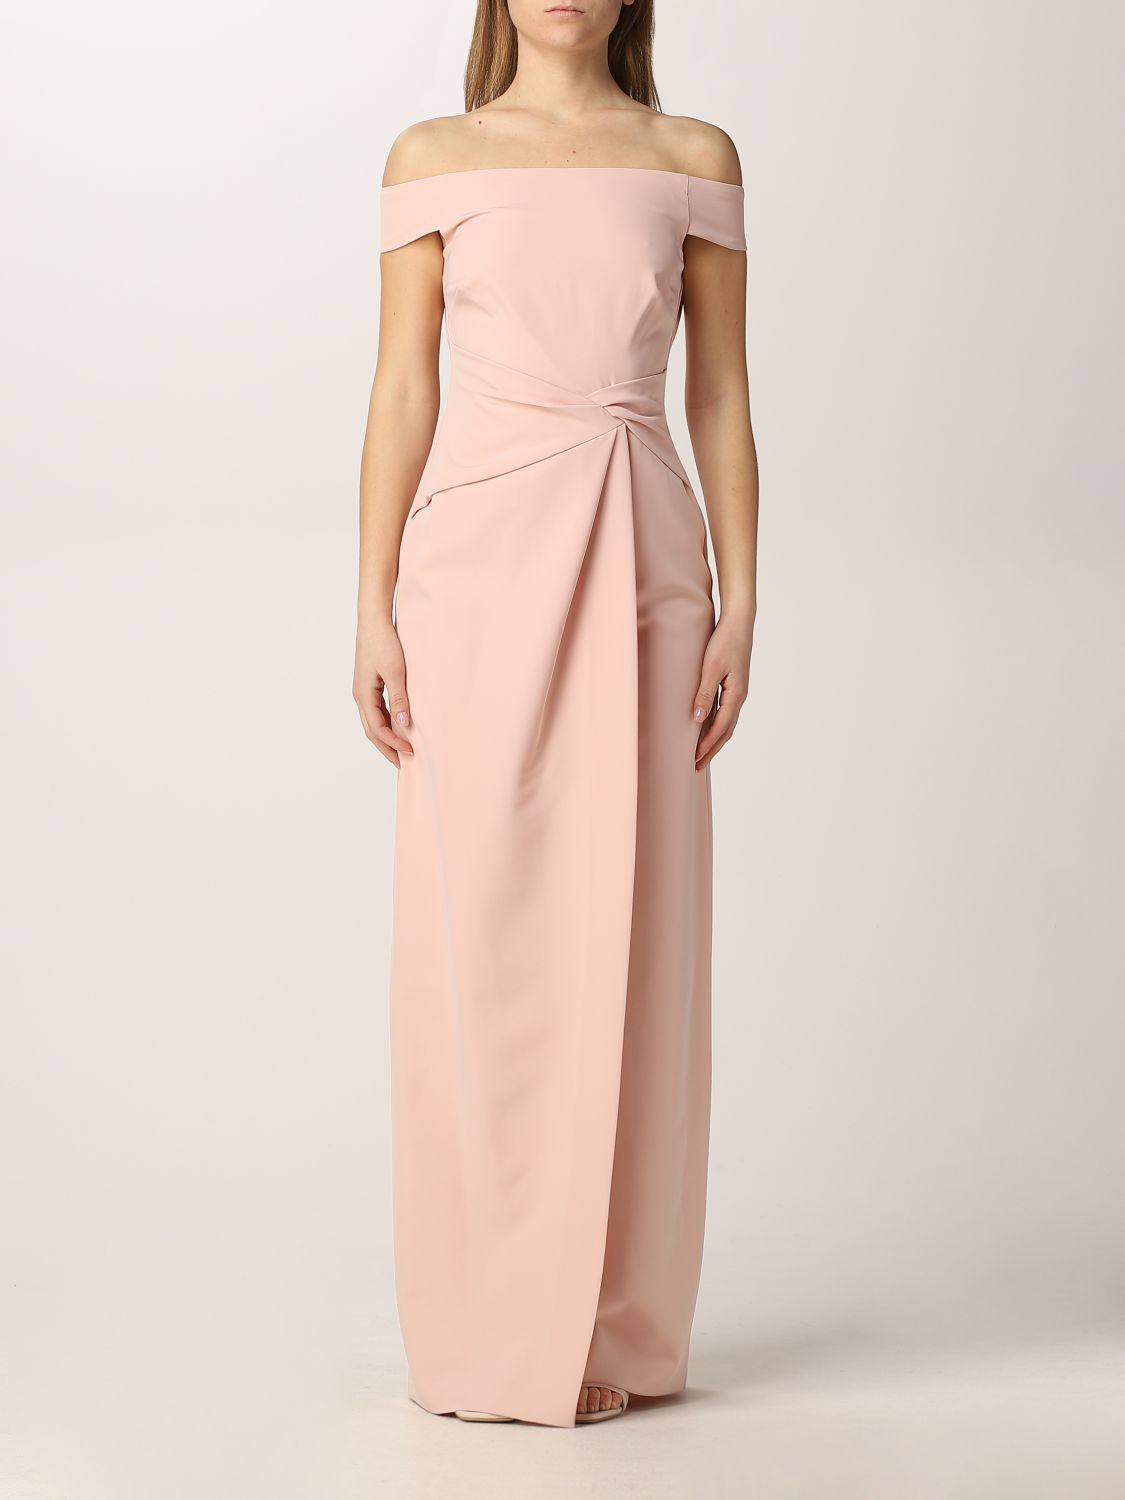 LAUREN RALPH LAUREN: long dress - Pink | Lauren Ralph Lauren dress  253863508 online on 